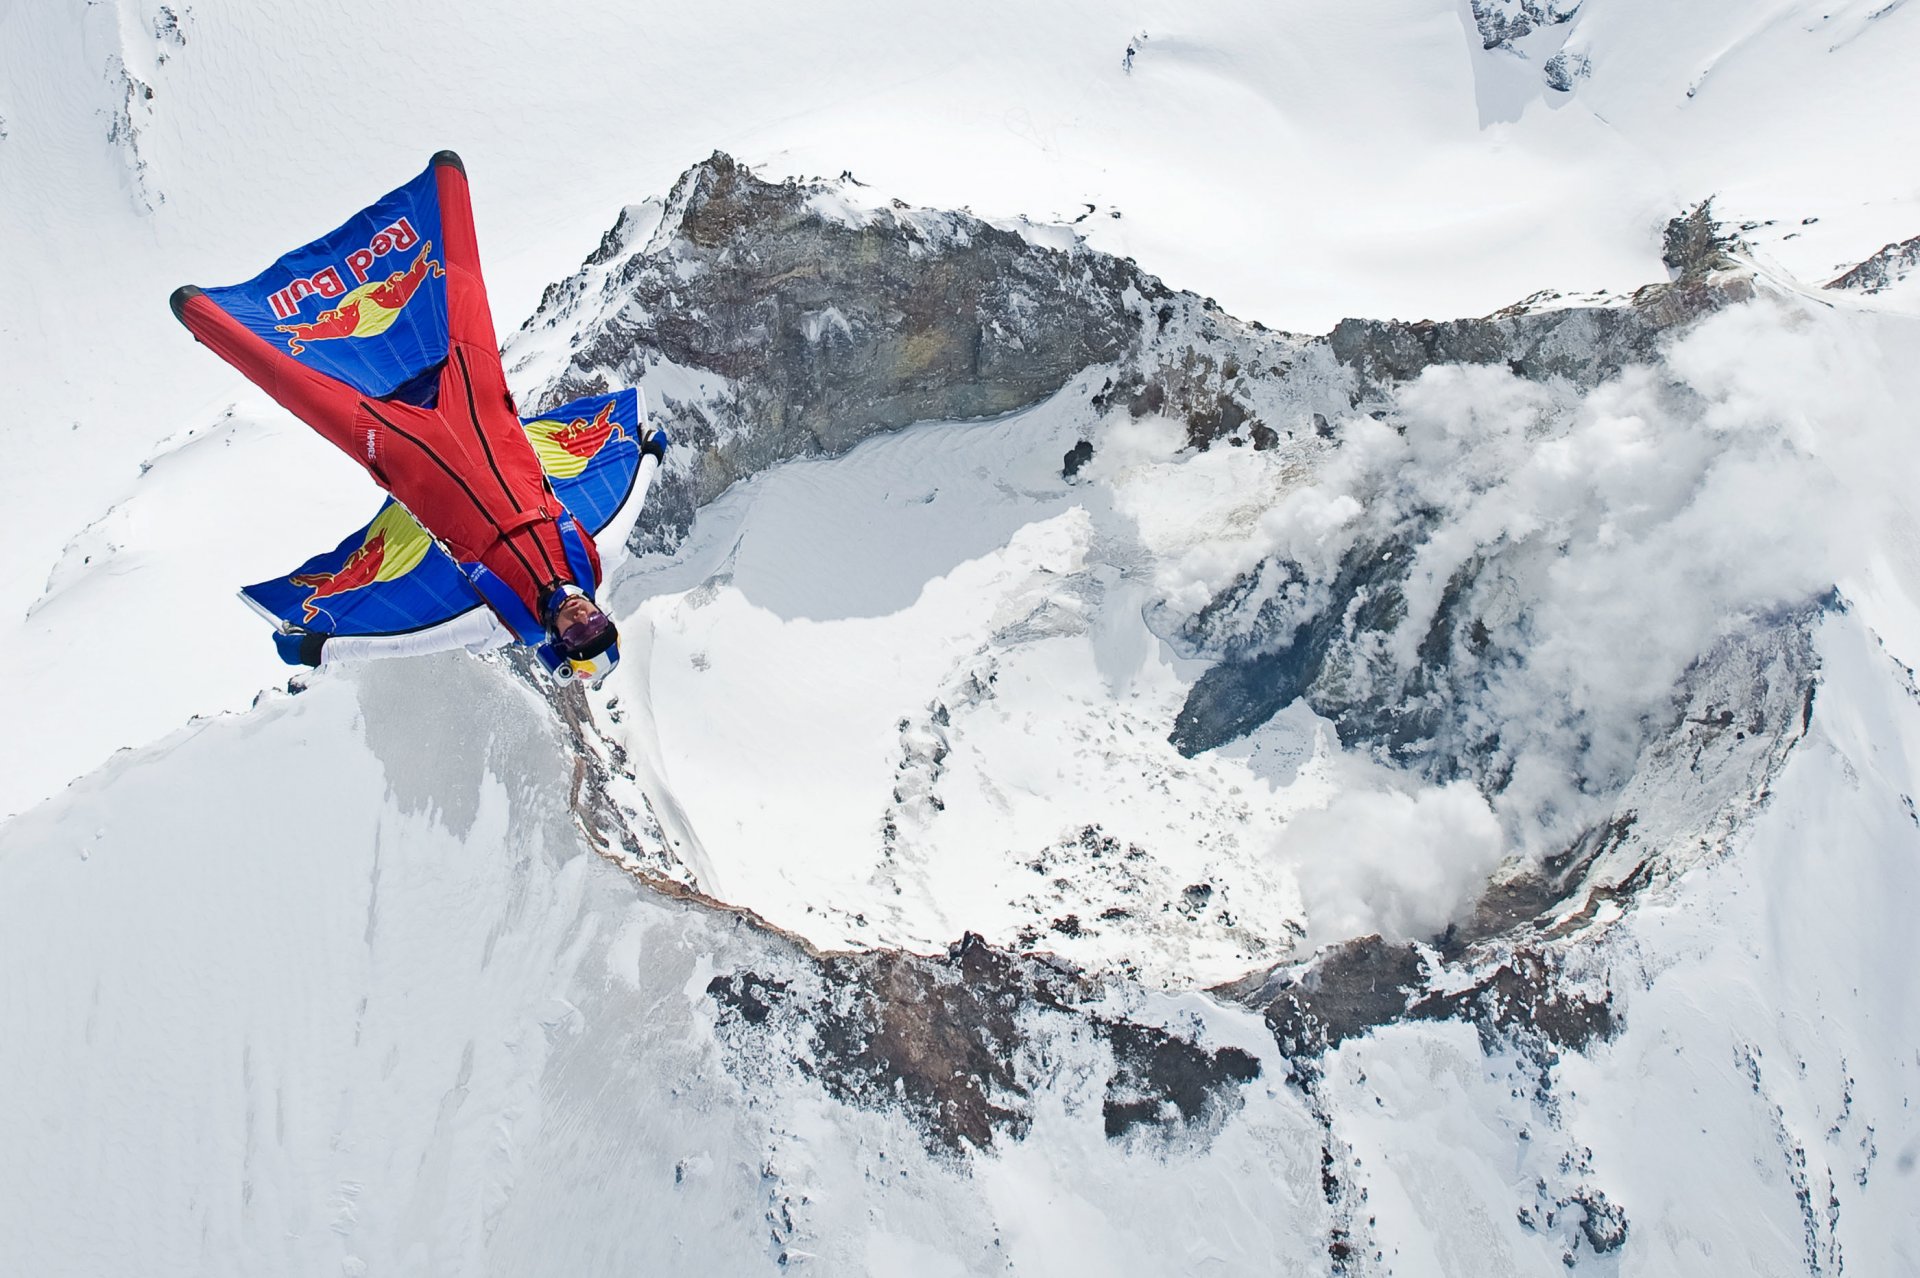 вингсьют пилот летать летчик вулкан гора дым снег зима контейнер парашют красный бык экстремальный спорт